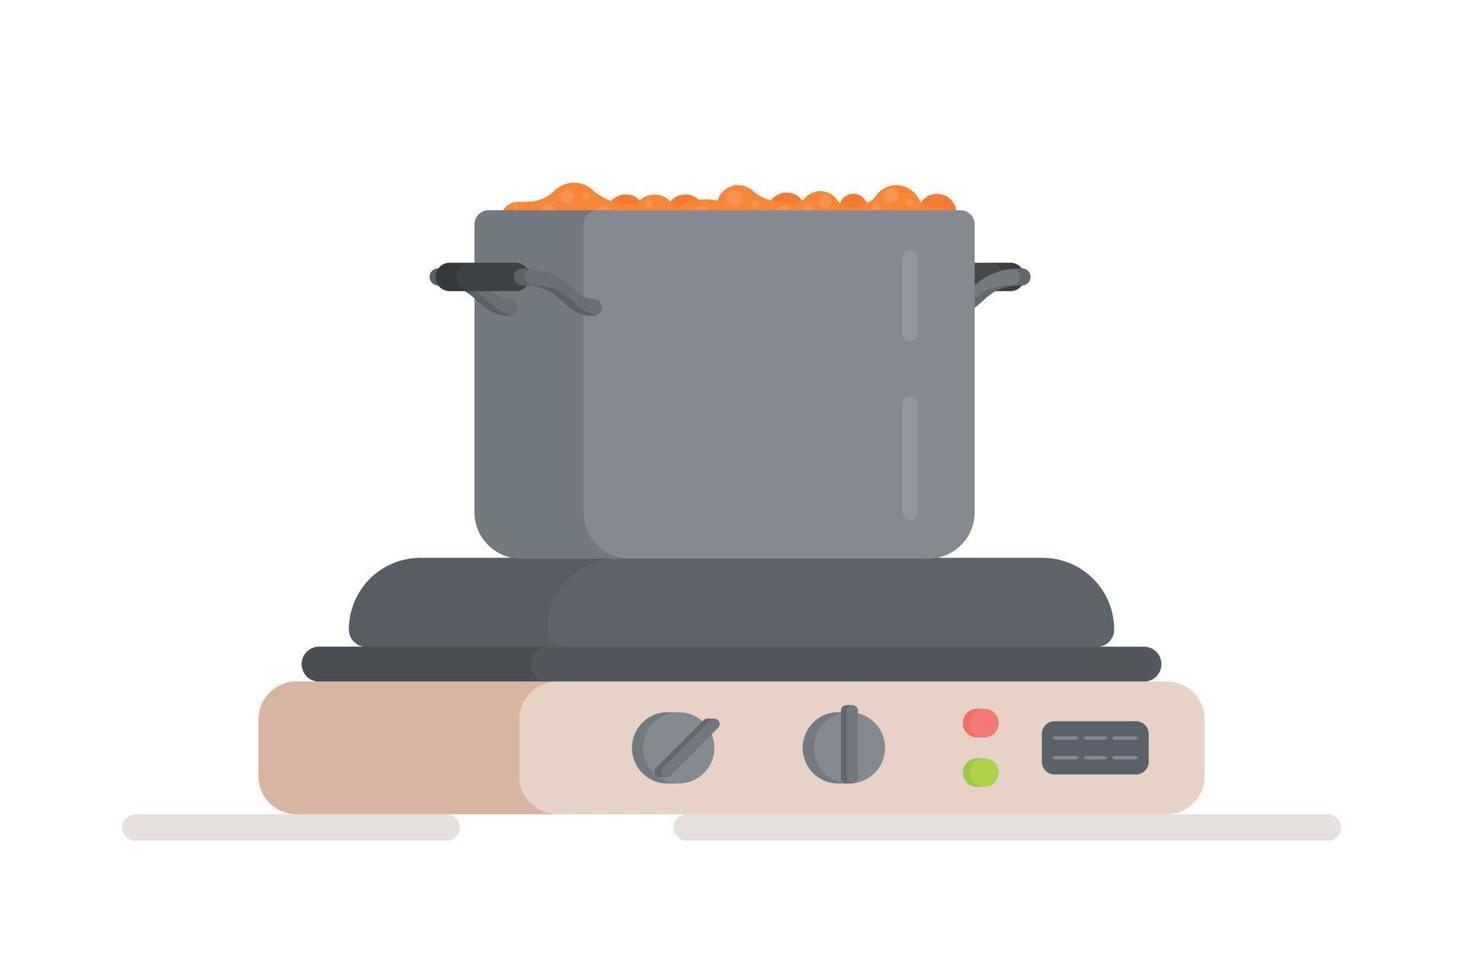 ilustração em vetor de cozinhar sopa para serragem. comida, receitas, borscht, comida, produtos. jantar em família.